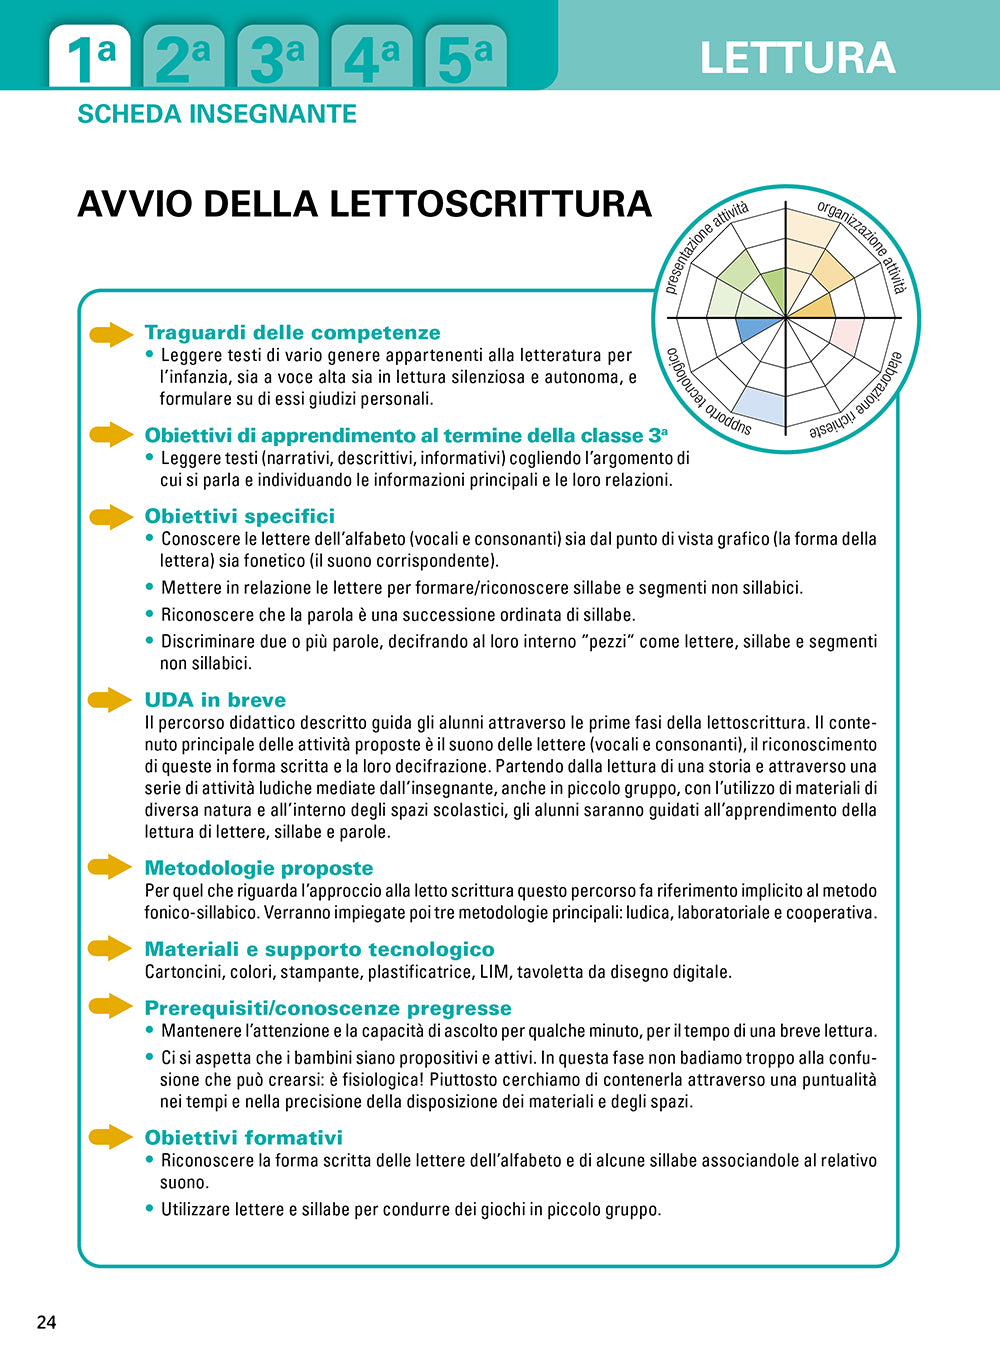 Unità di Apprendimento di Italiano per la Scuola Primaria ::Una programmazione didattica per tutti basata sui principi dell'UDL